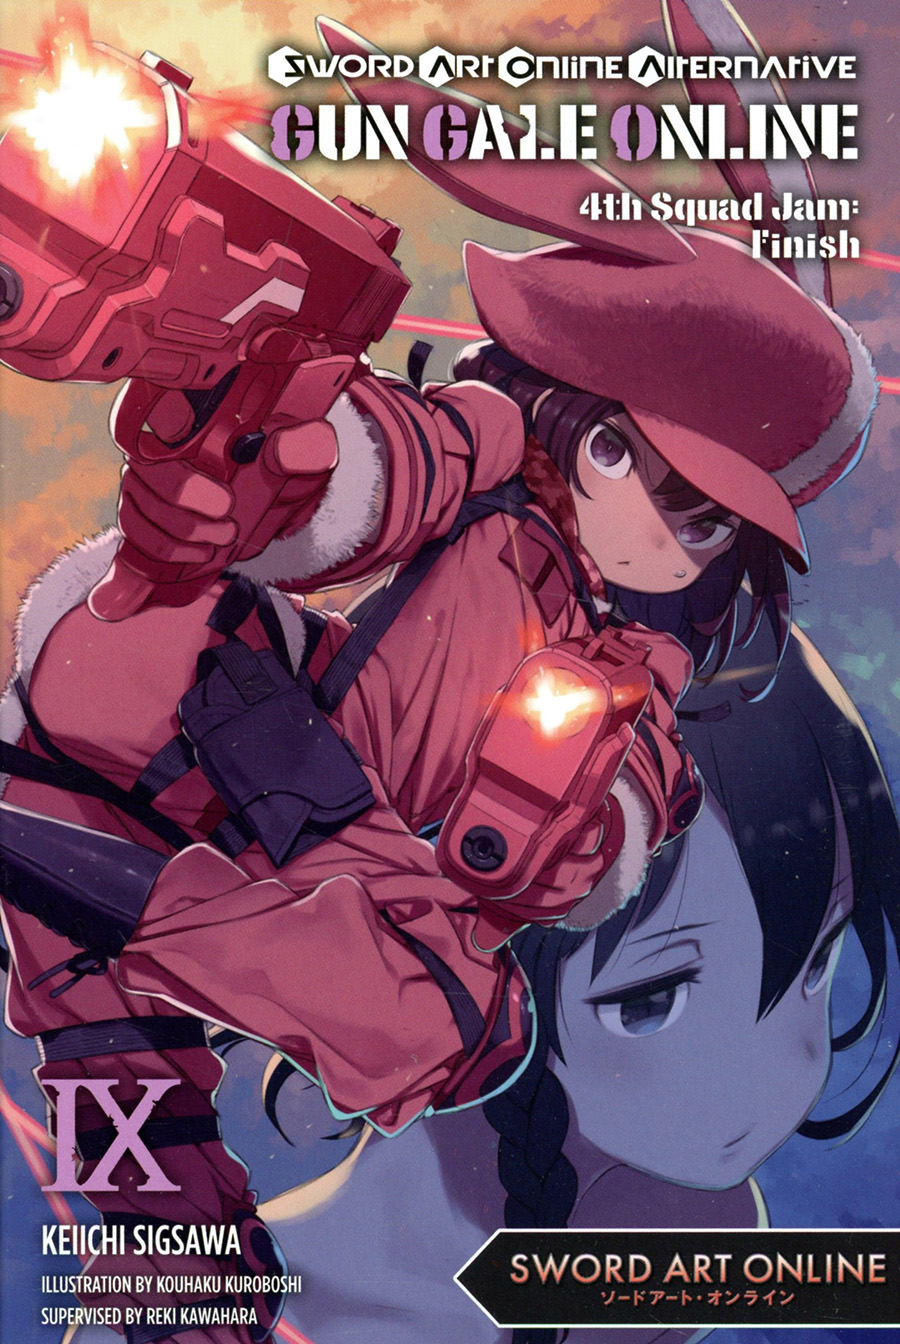 Sword Art Online Alternative Gun Gale Online Light Novel Vol 9 4th Squad Jam Finish